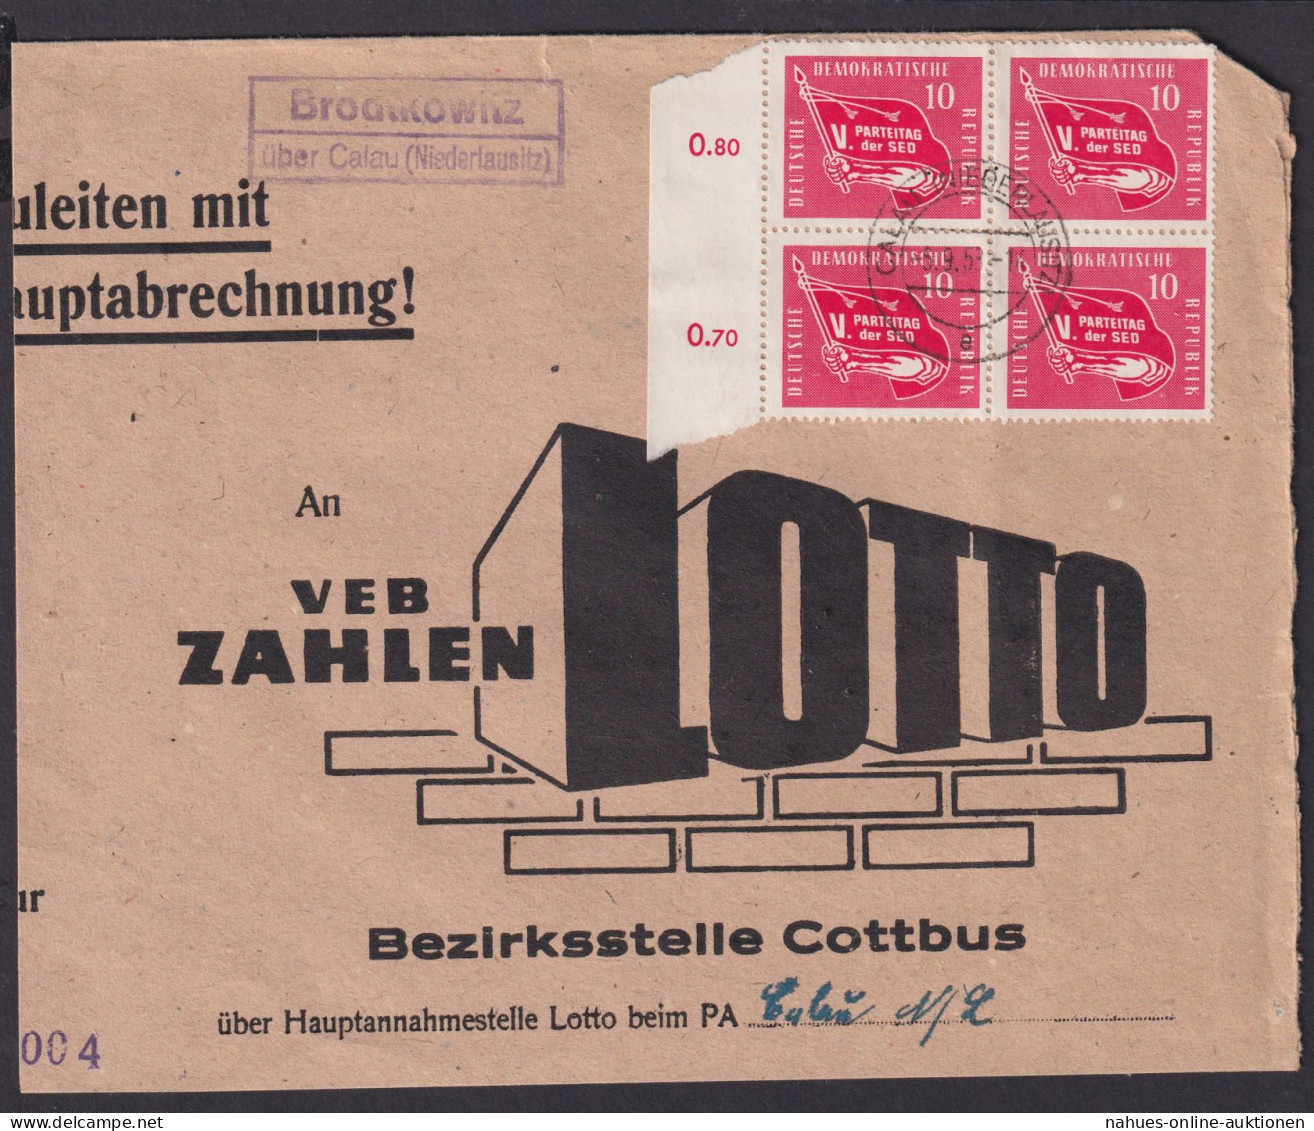 Brodtkowitz über Calau Niederlausitz Brandenburg DDR Brief Landpoststempel - Briefe U. Dokumente